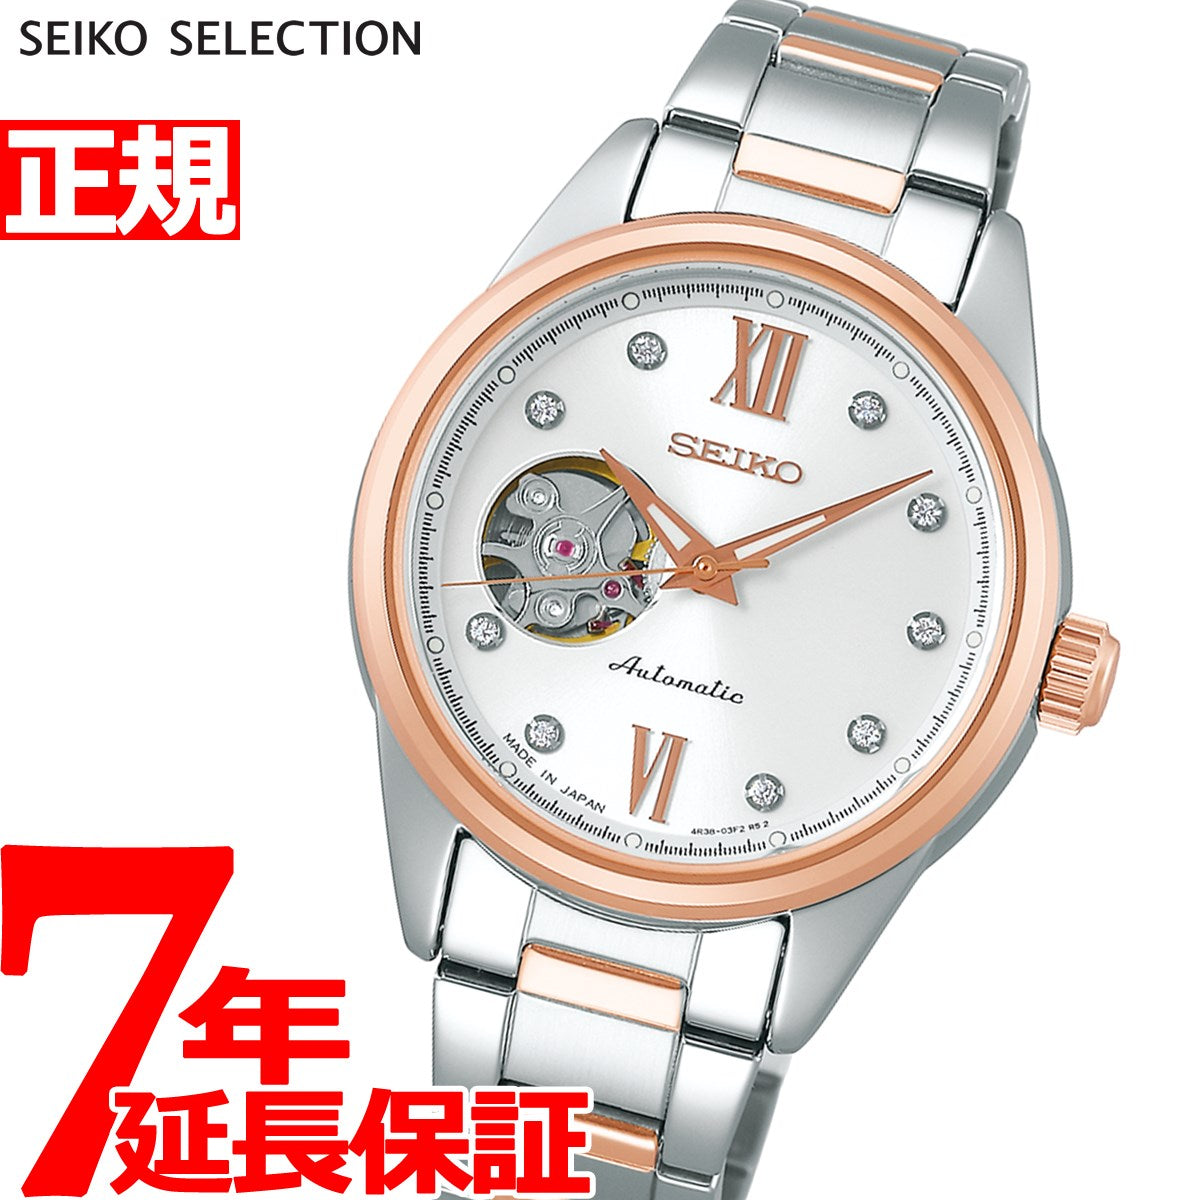 再×14入荷 [セイコーウォッチ] 自動巻き腕時計 セイコー セレクション